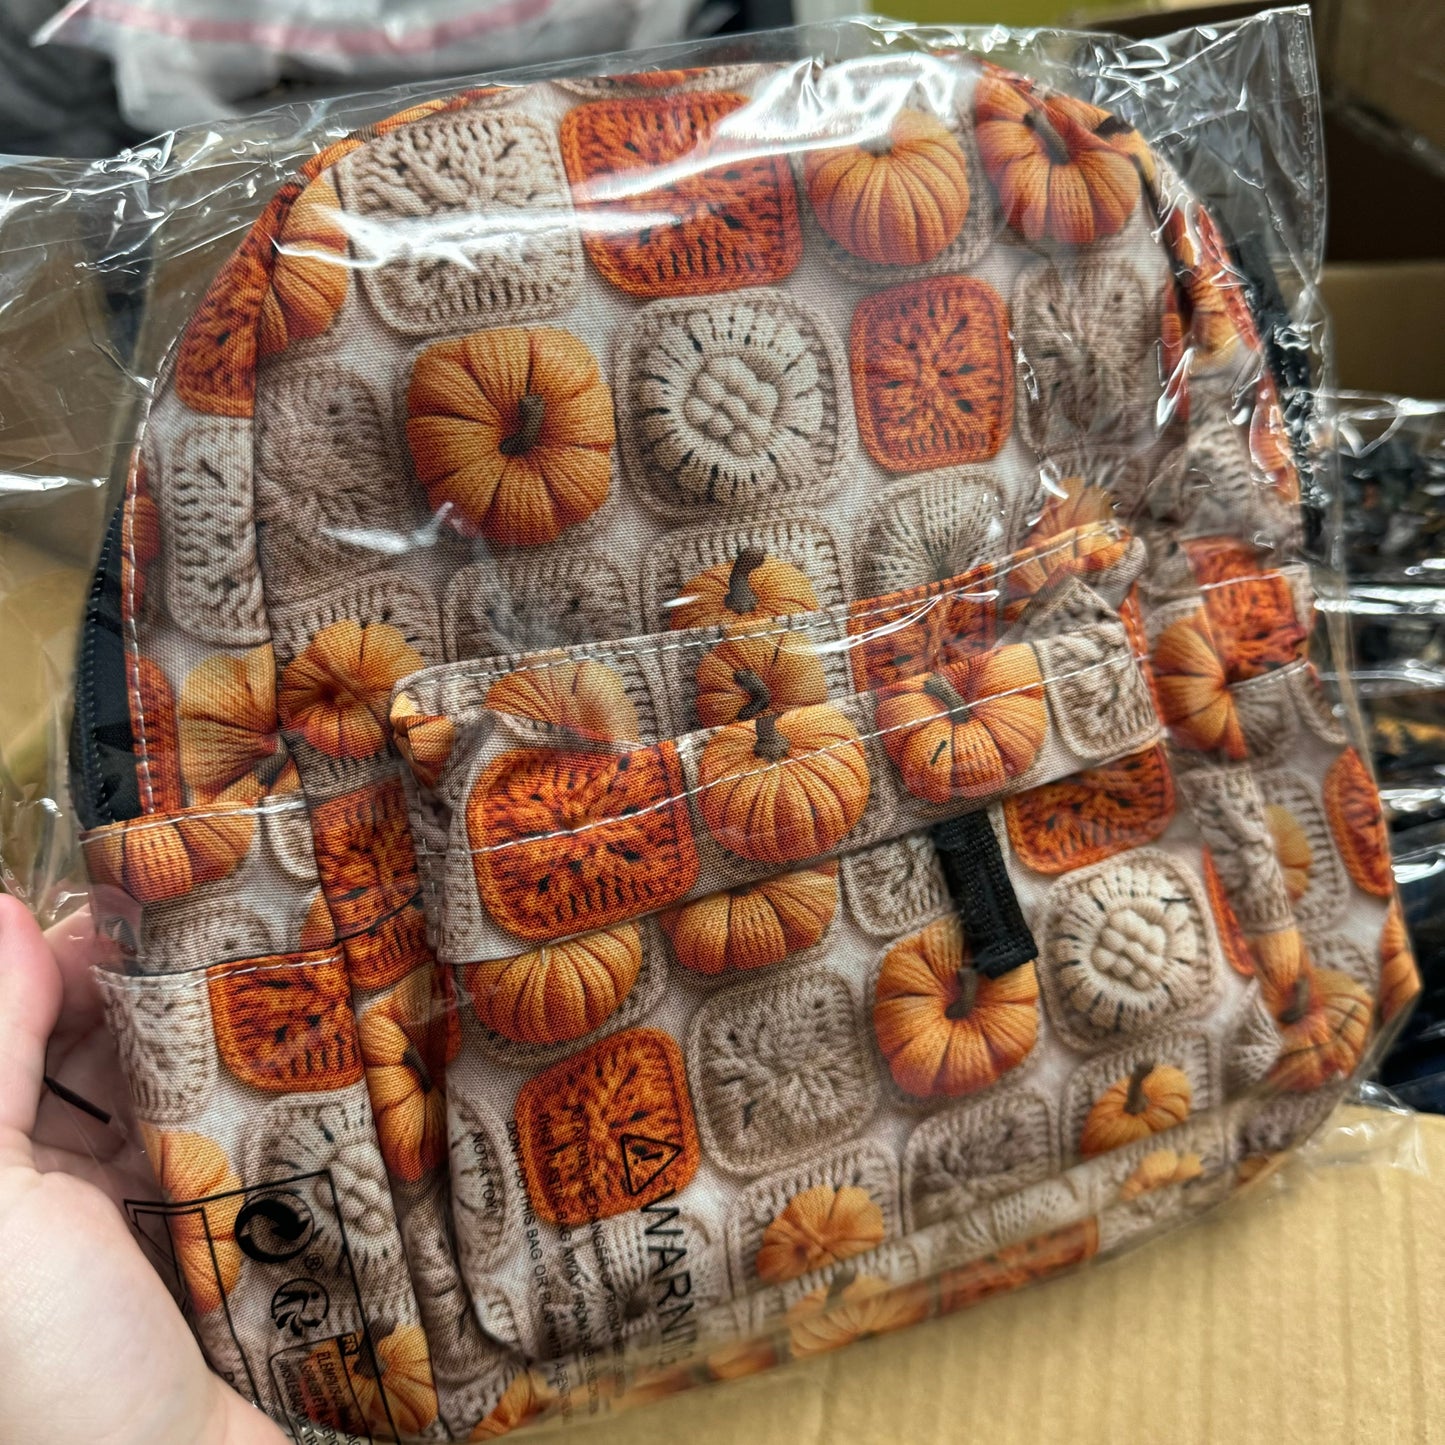 Mini Backpack - Knit Pumpkin